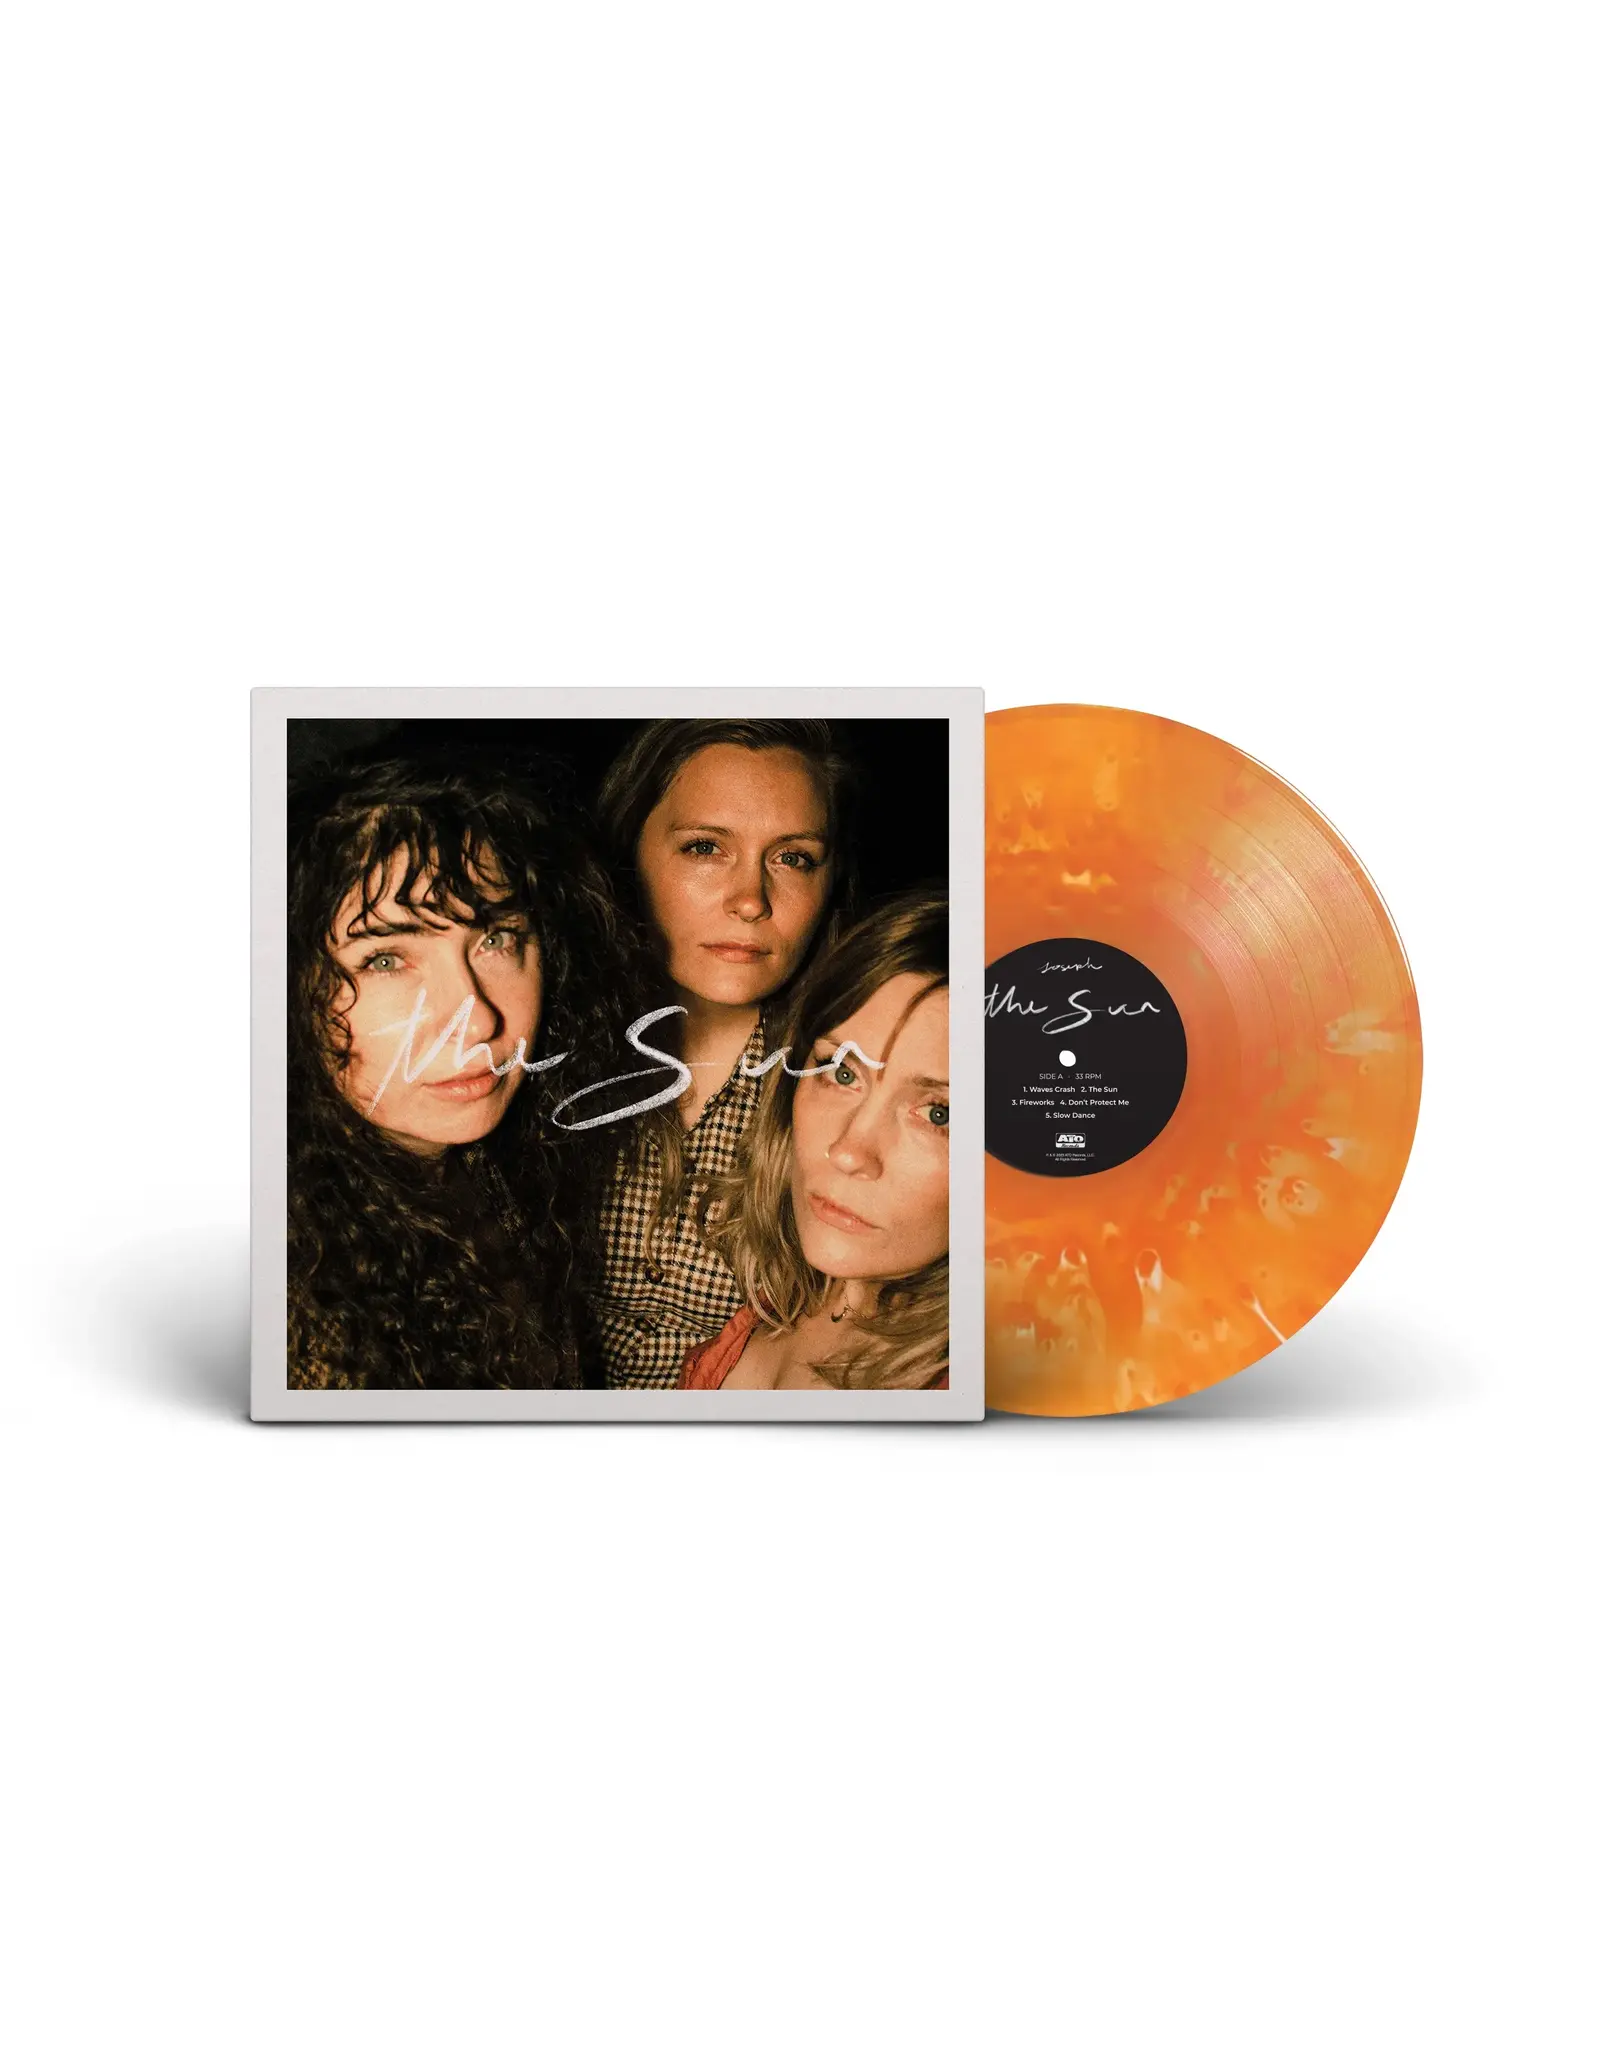 Joseph - The Sun (Orange Vinyl)